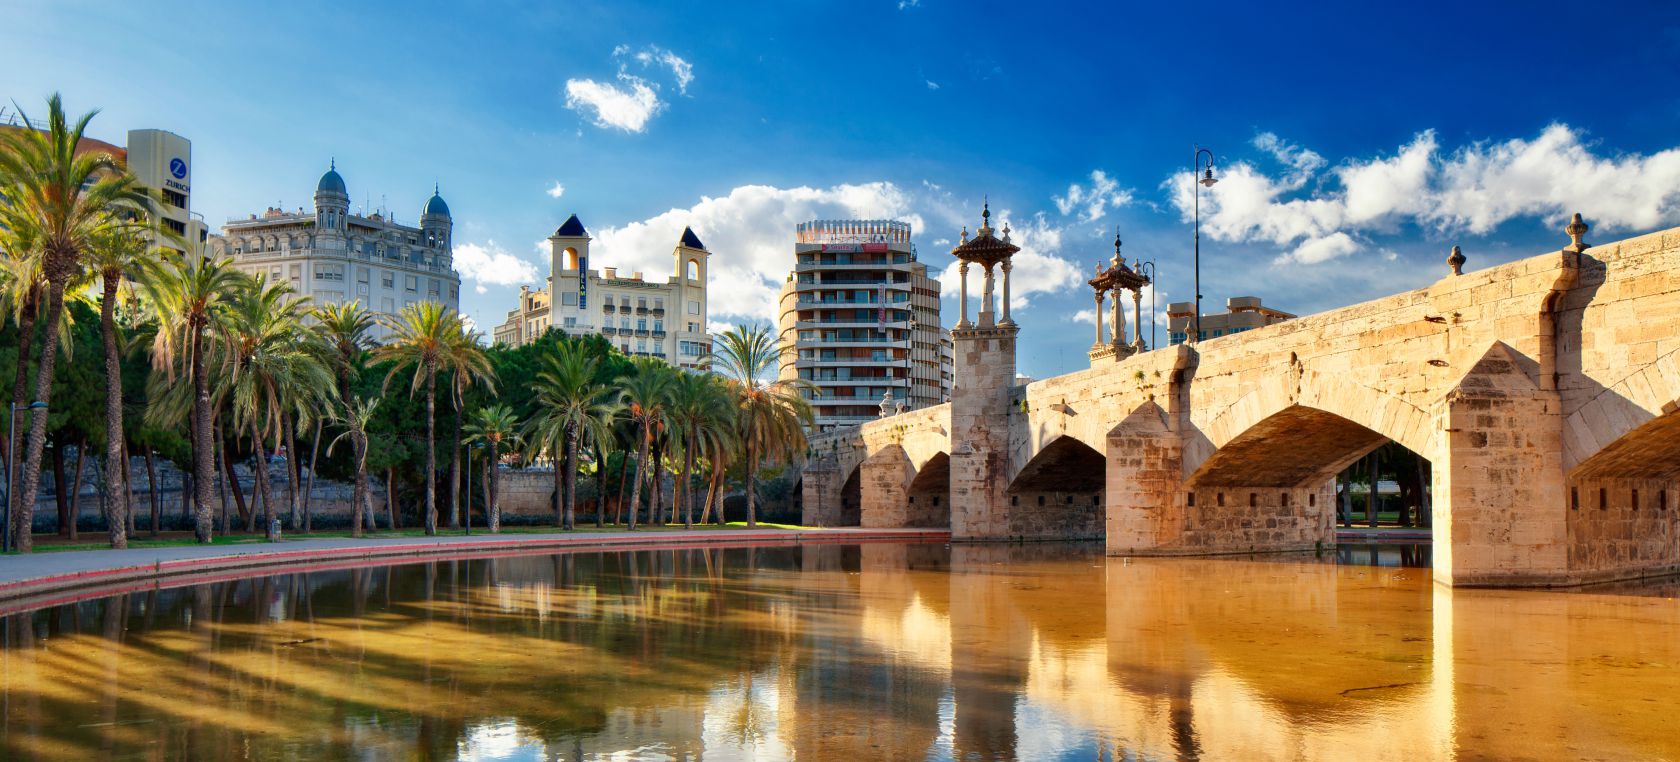 La mejor ciudad en la que vivir según los expatriados es española: pero no es Barcelona